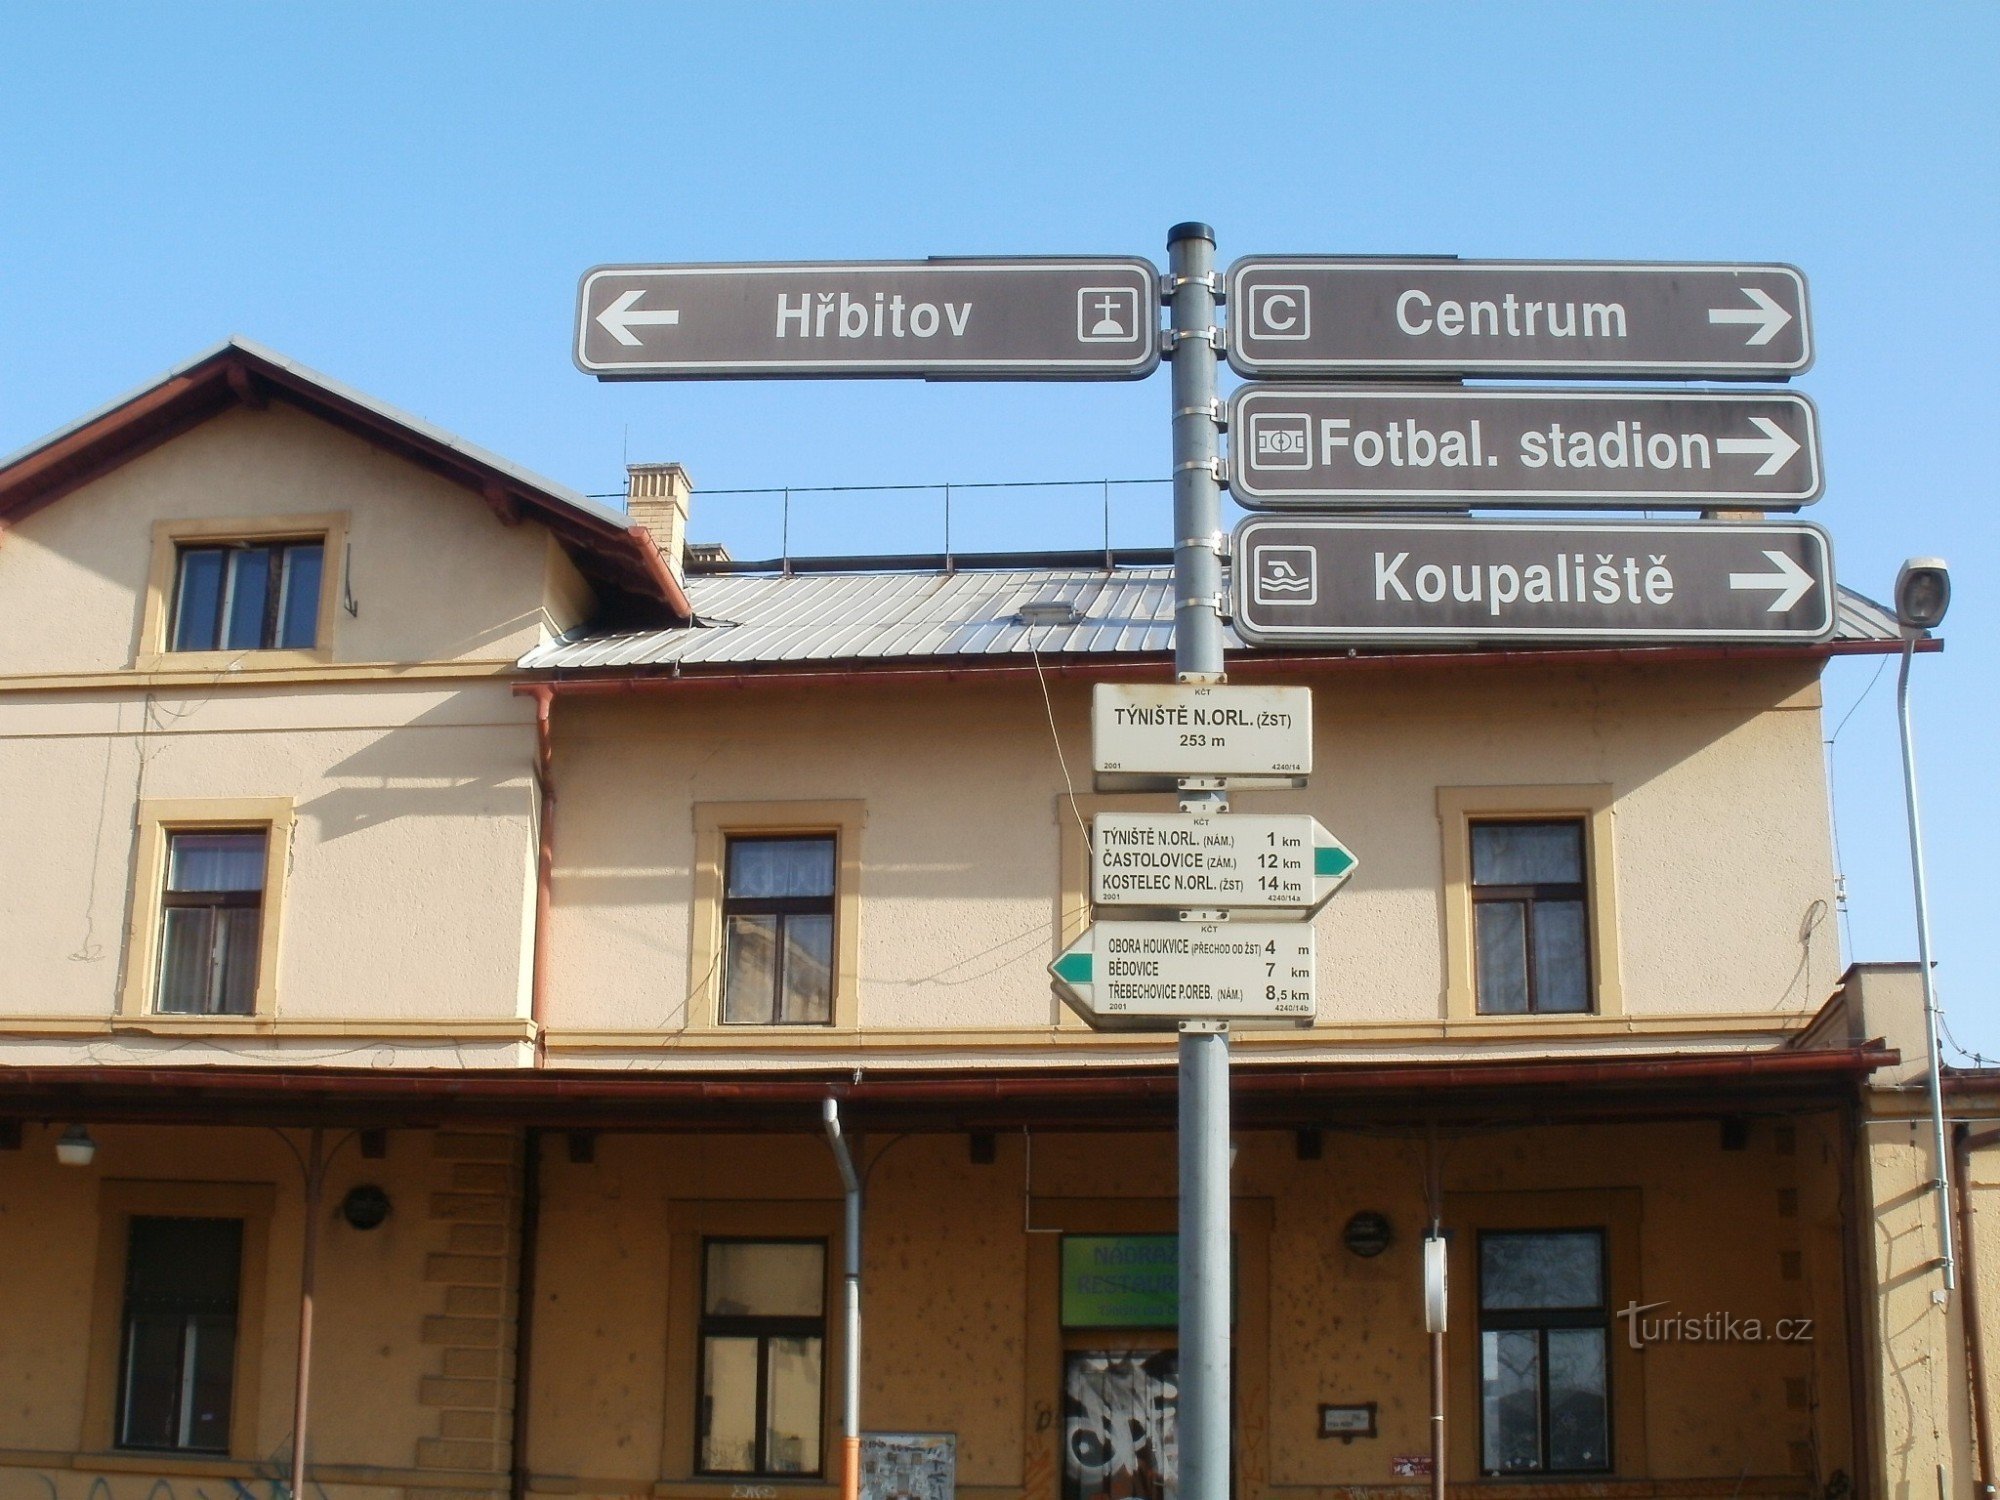 τουριστική διασταύρωση Týniště nad Orlicí - σιδηροδρομικός σταθμός